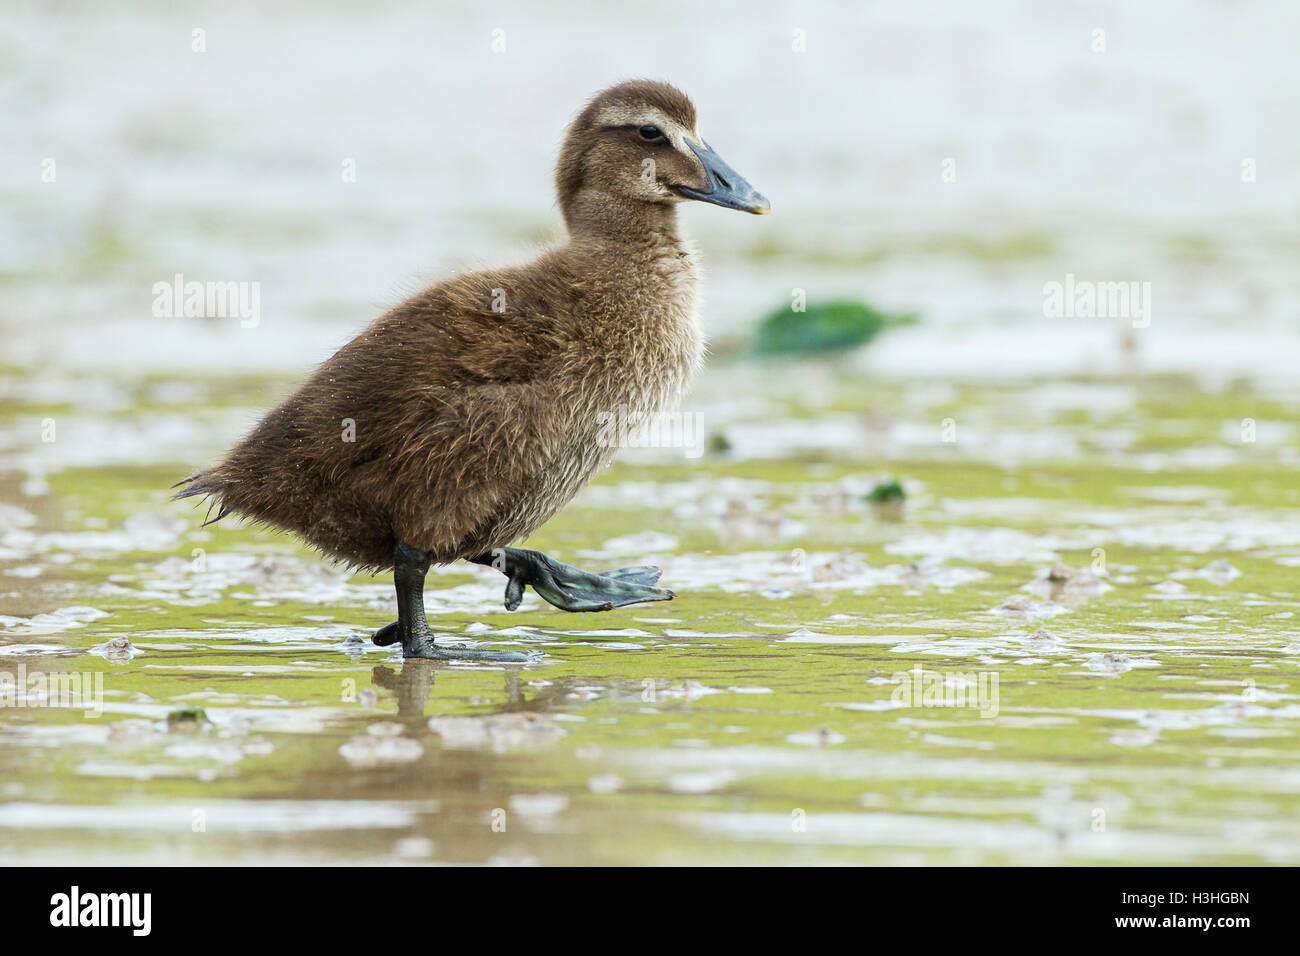 common eider (Somateria mollissima) duckling walking on mud at coast, Northumberland, England, UK Stock Photo